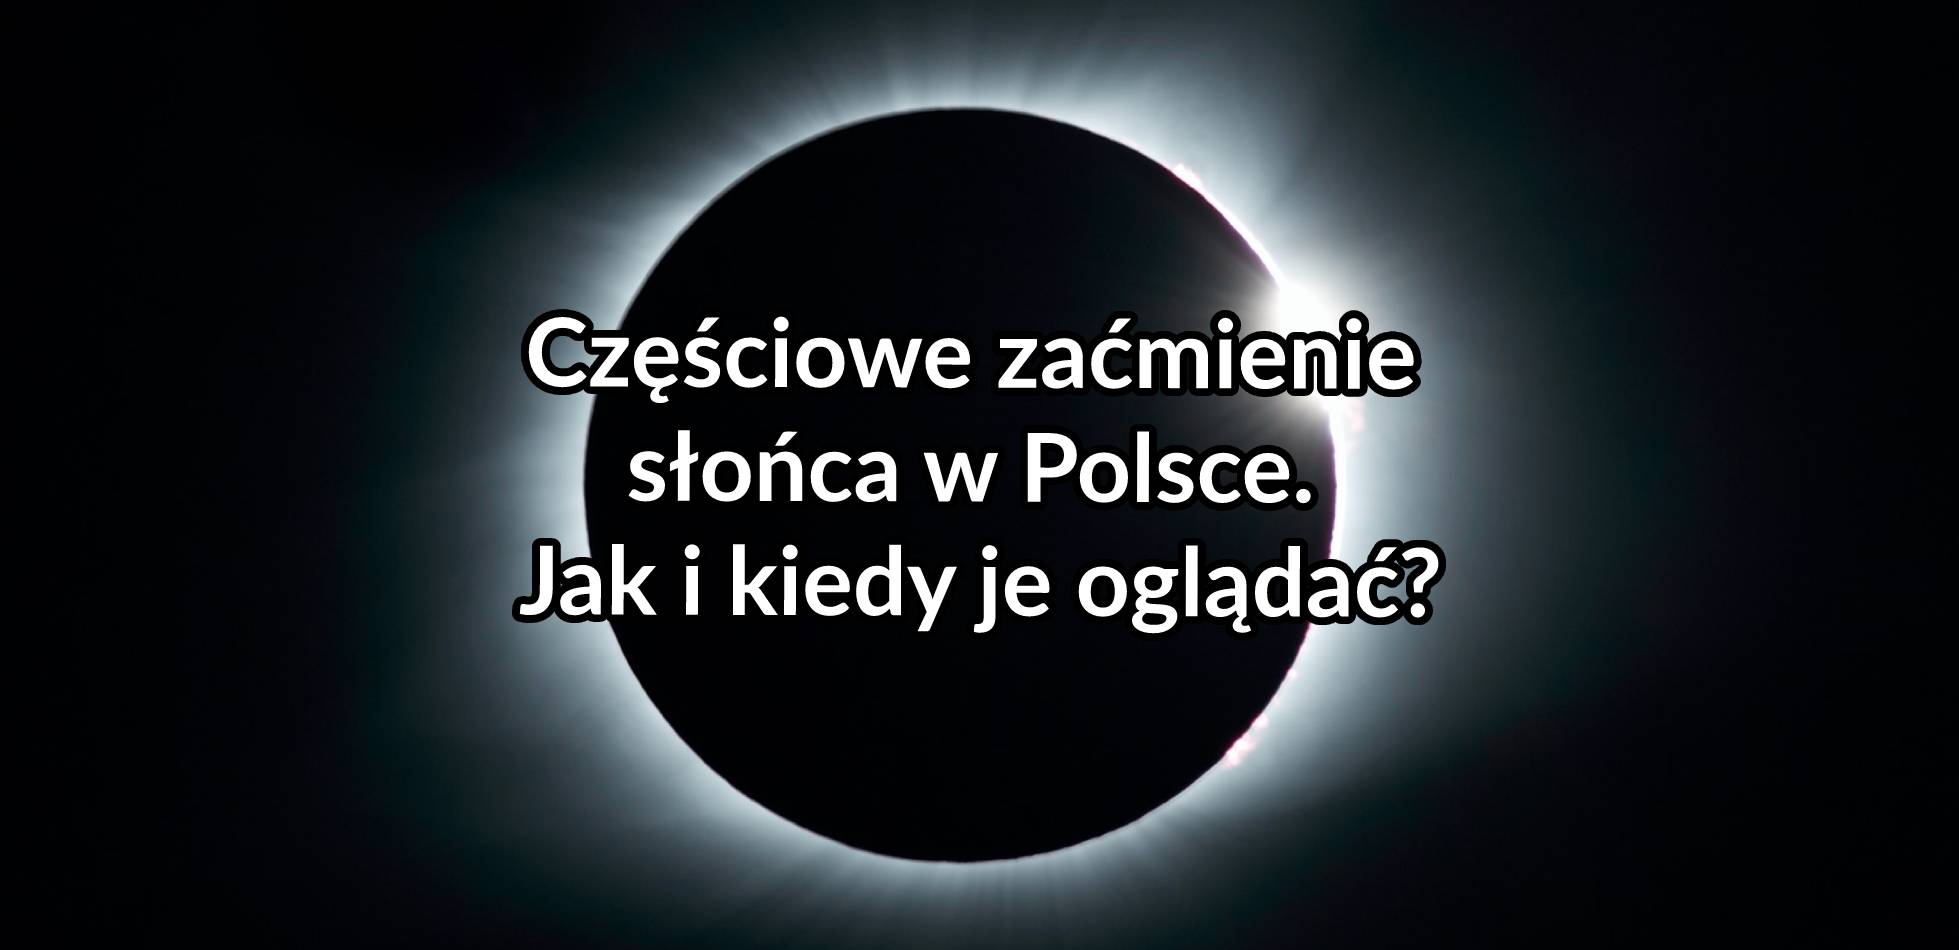 Częściowe zaćmienie słońca w Polsce. Jak i kiedy je oglądać?